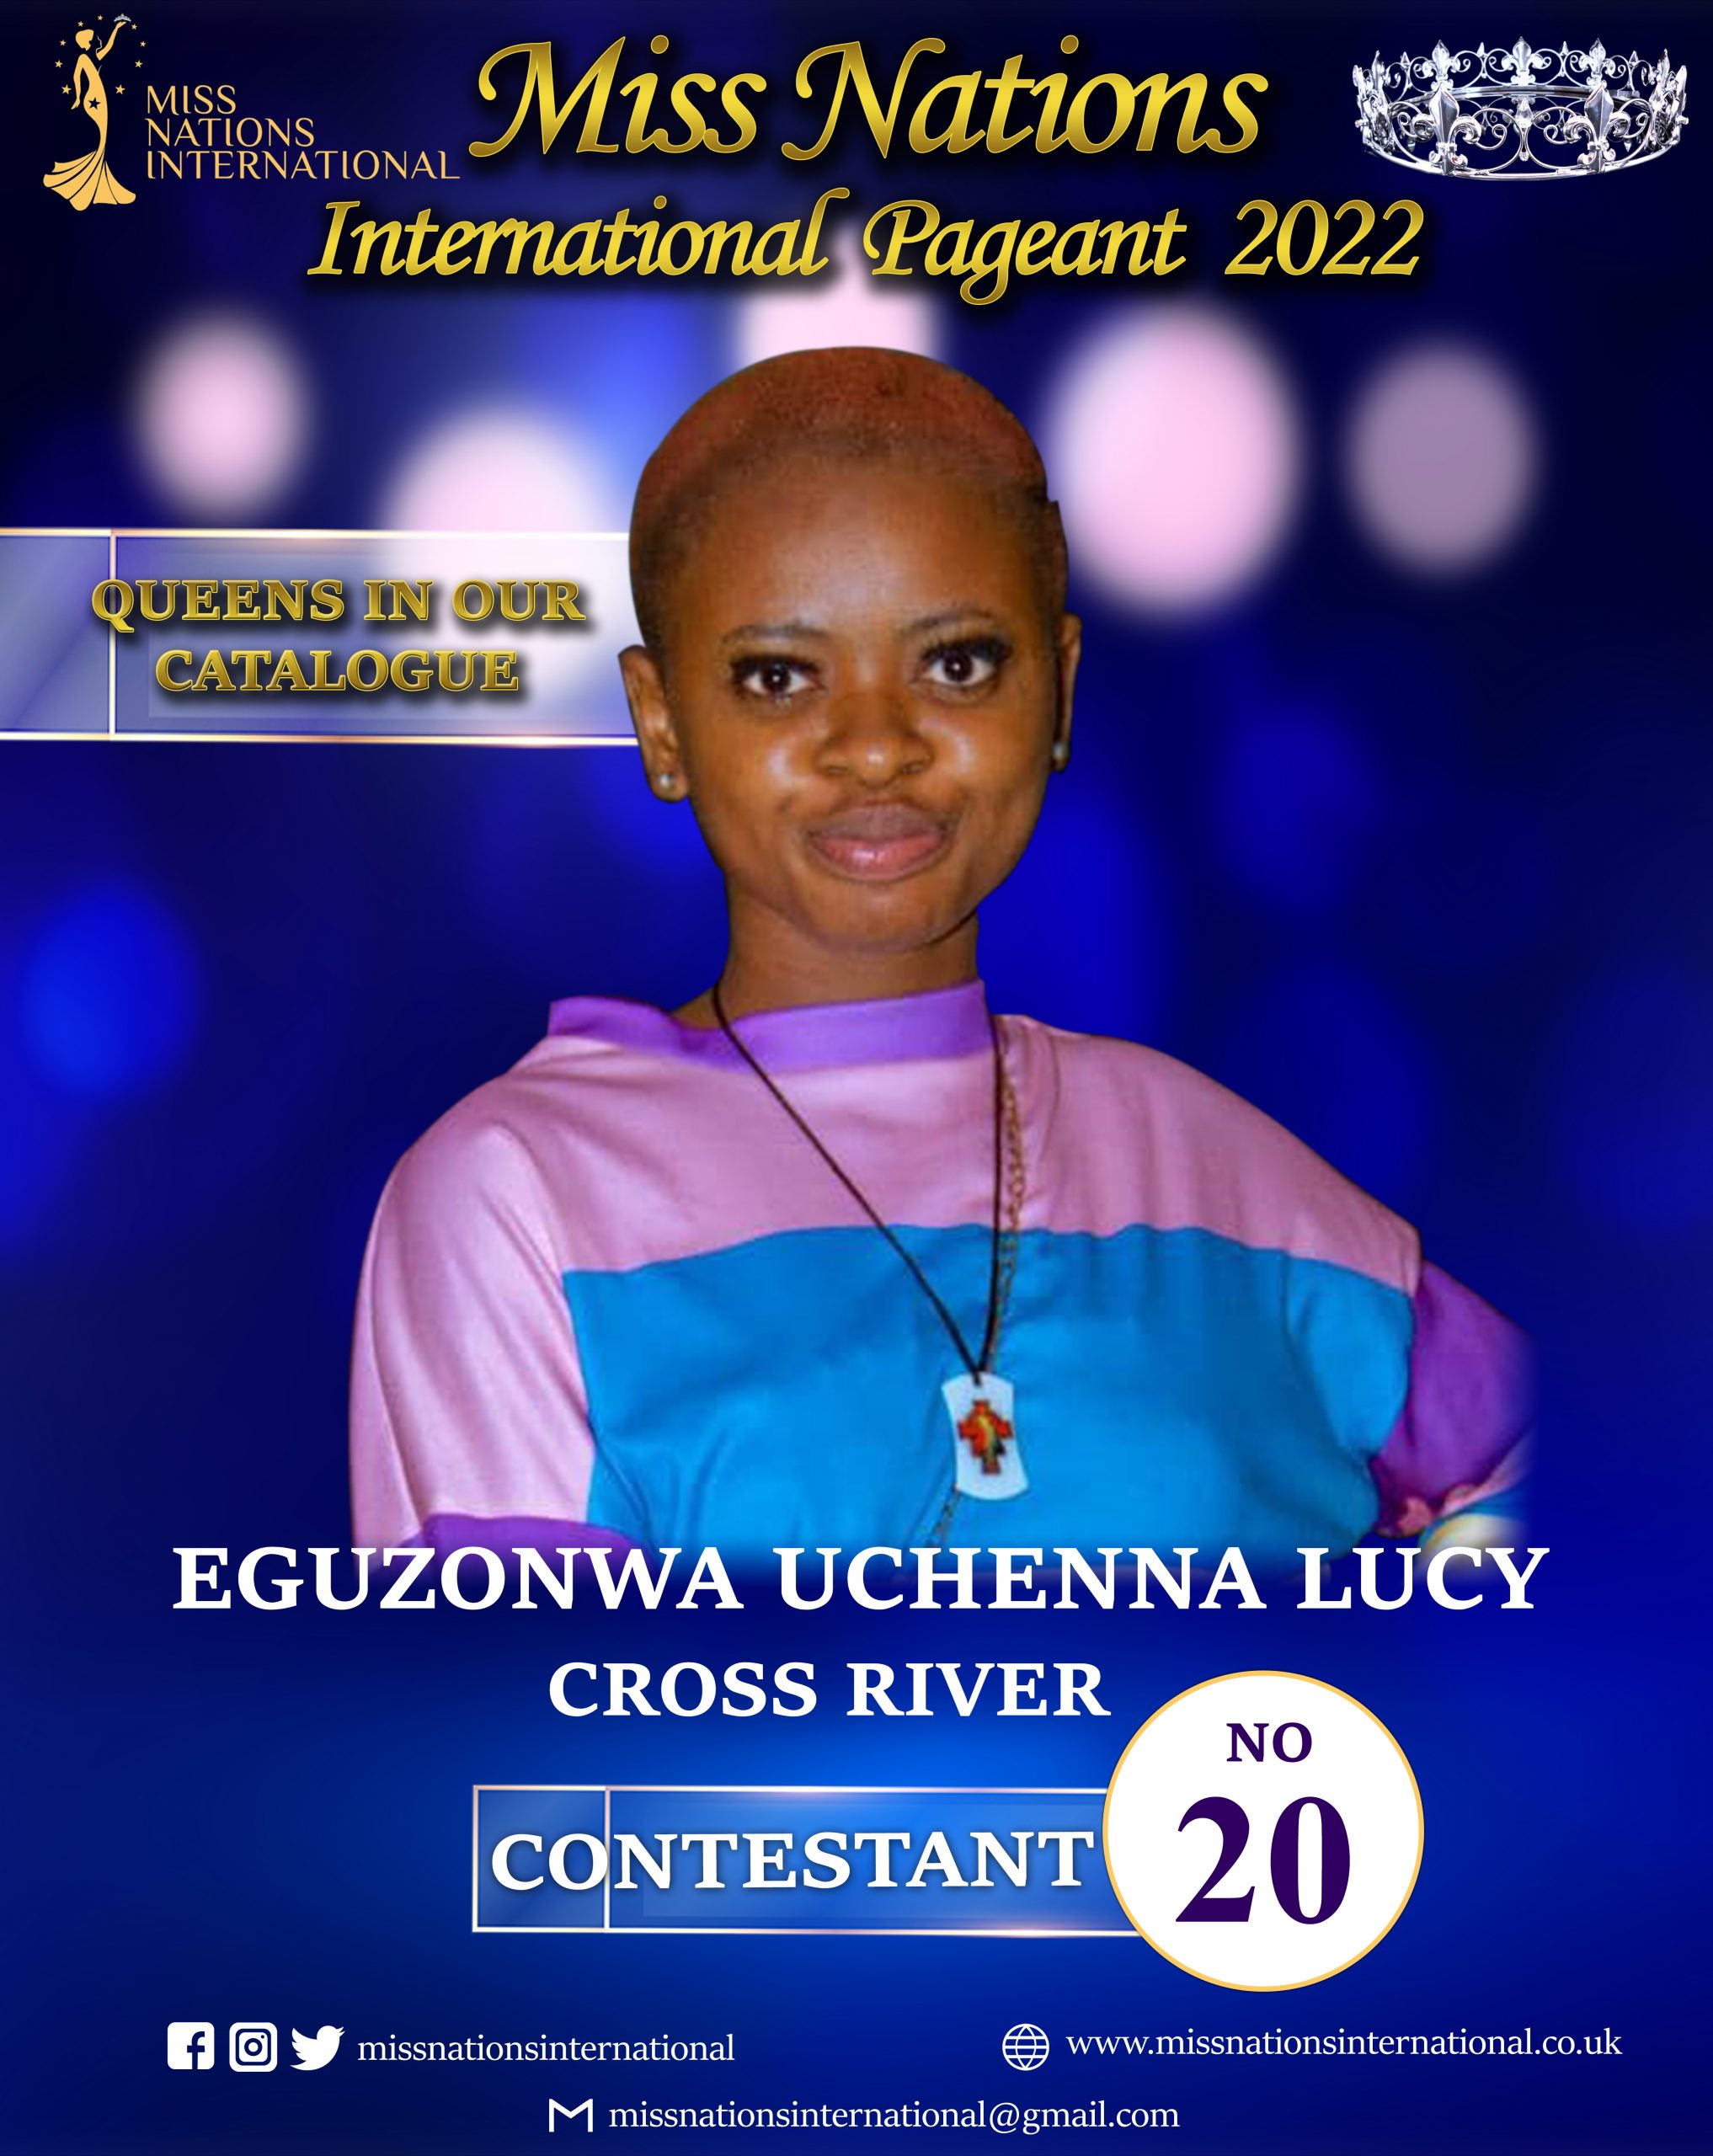 Eguzonwa Uchenna Lucy